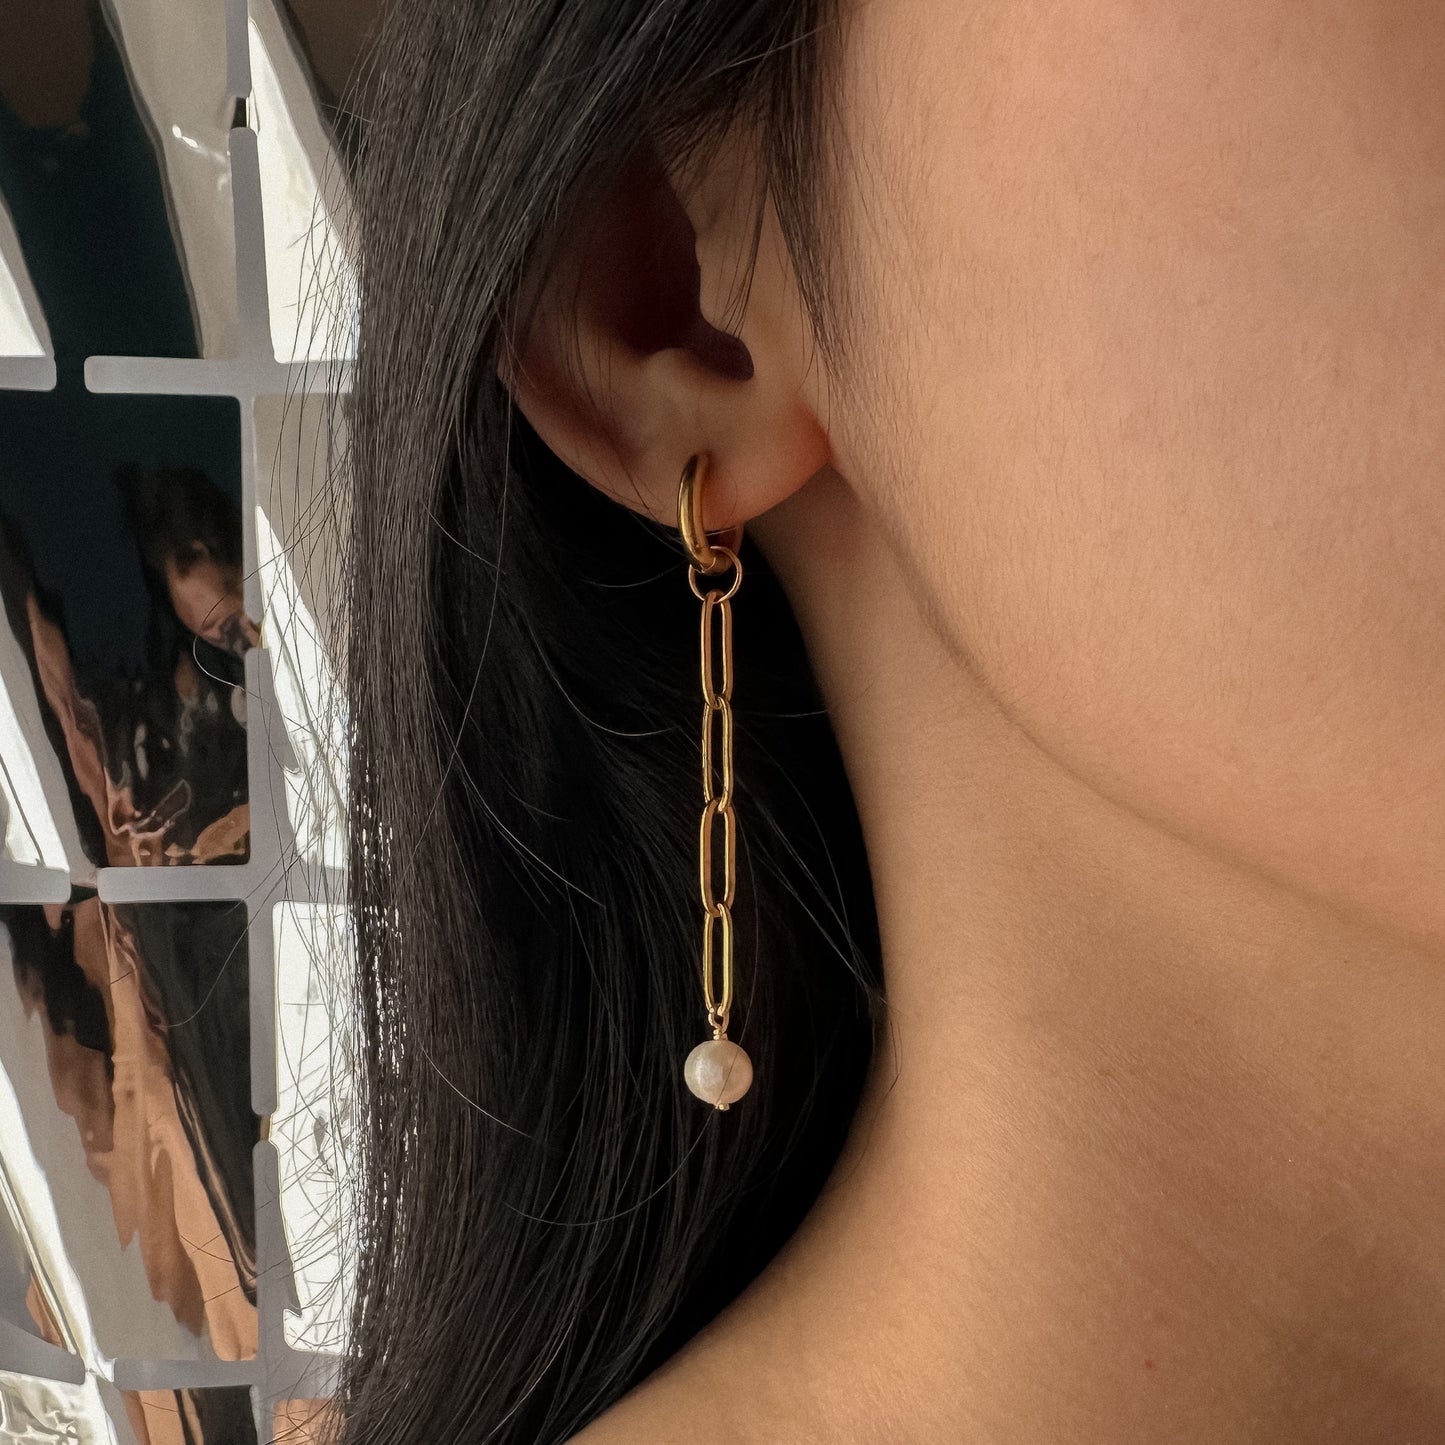 Fortaleza earrings